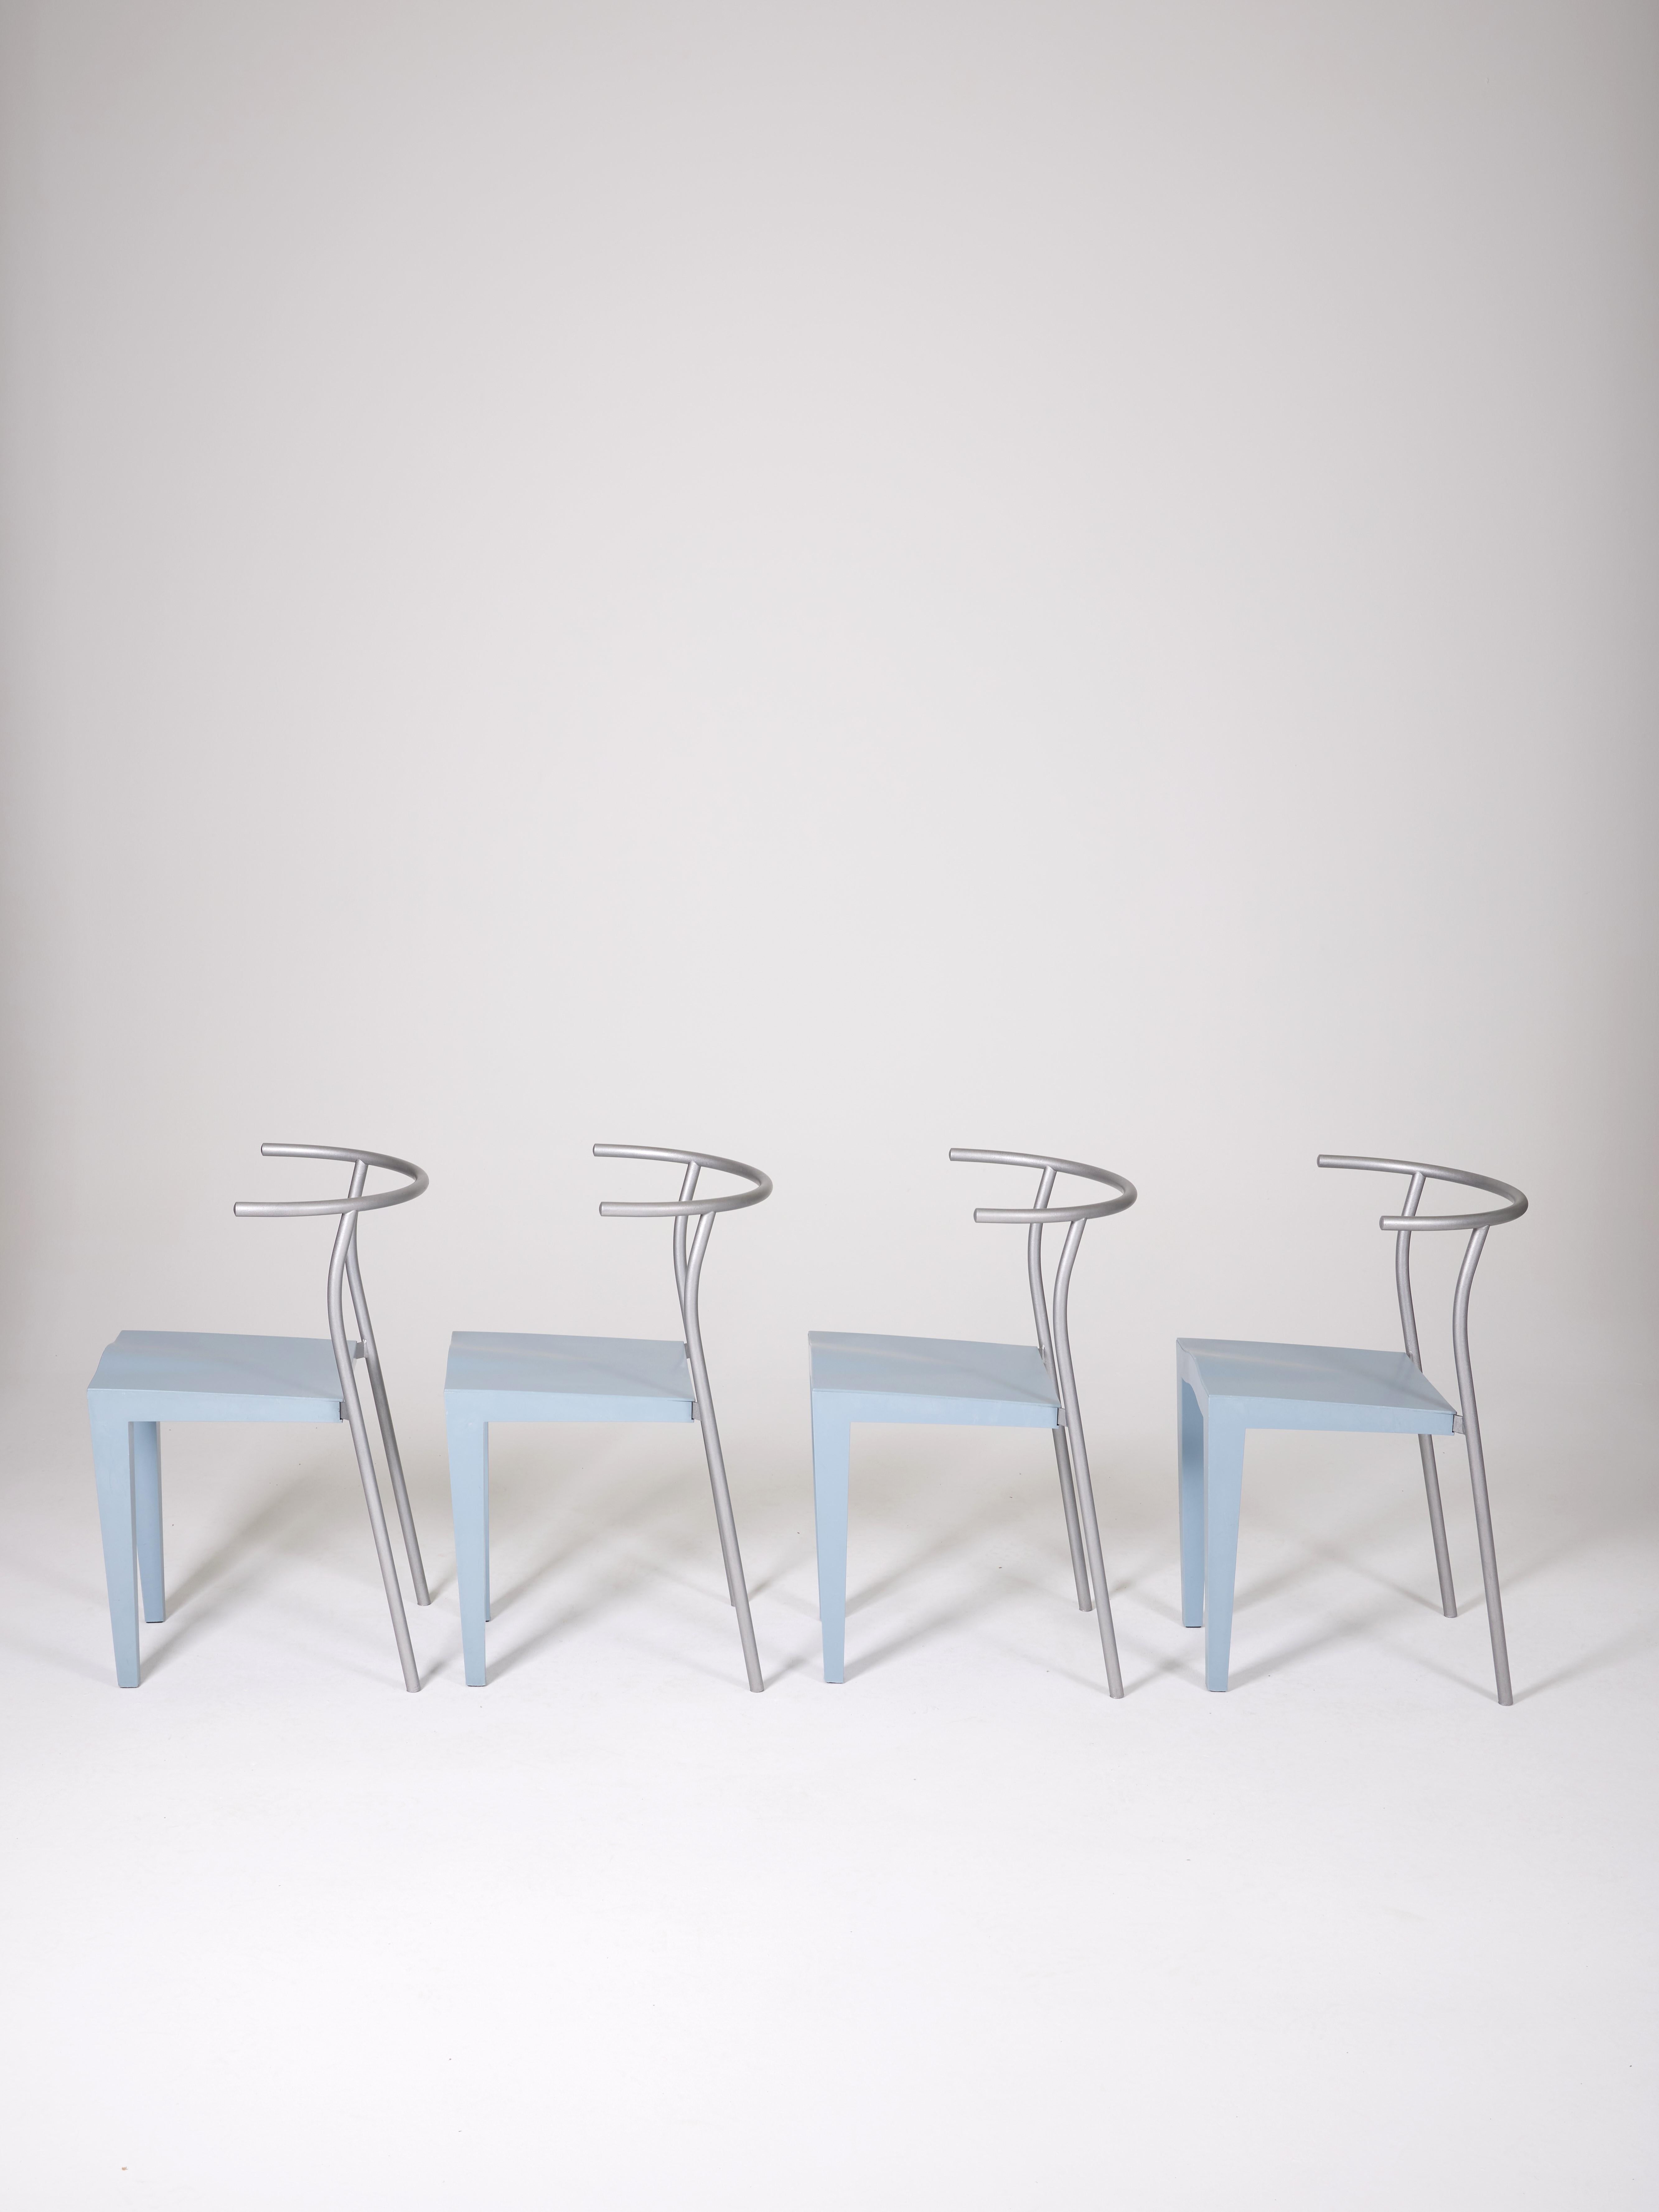 Ensemble de 4 chaises bleues Dr Glob de Philippe Starck. Edition Kartell, Italie 1988, daté sous le siège. Structure en métal tubulaire verni, assise en polypropylène. Très bon état.